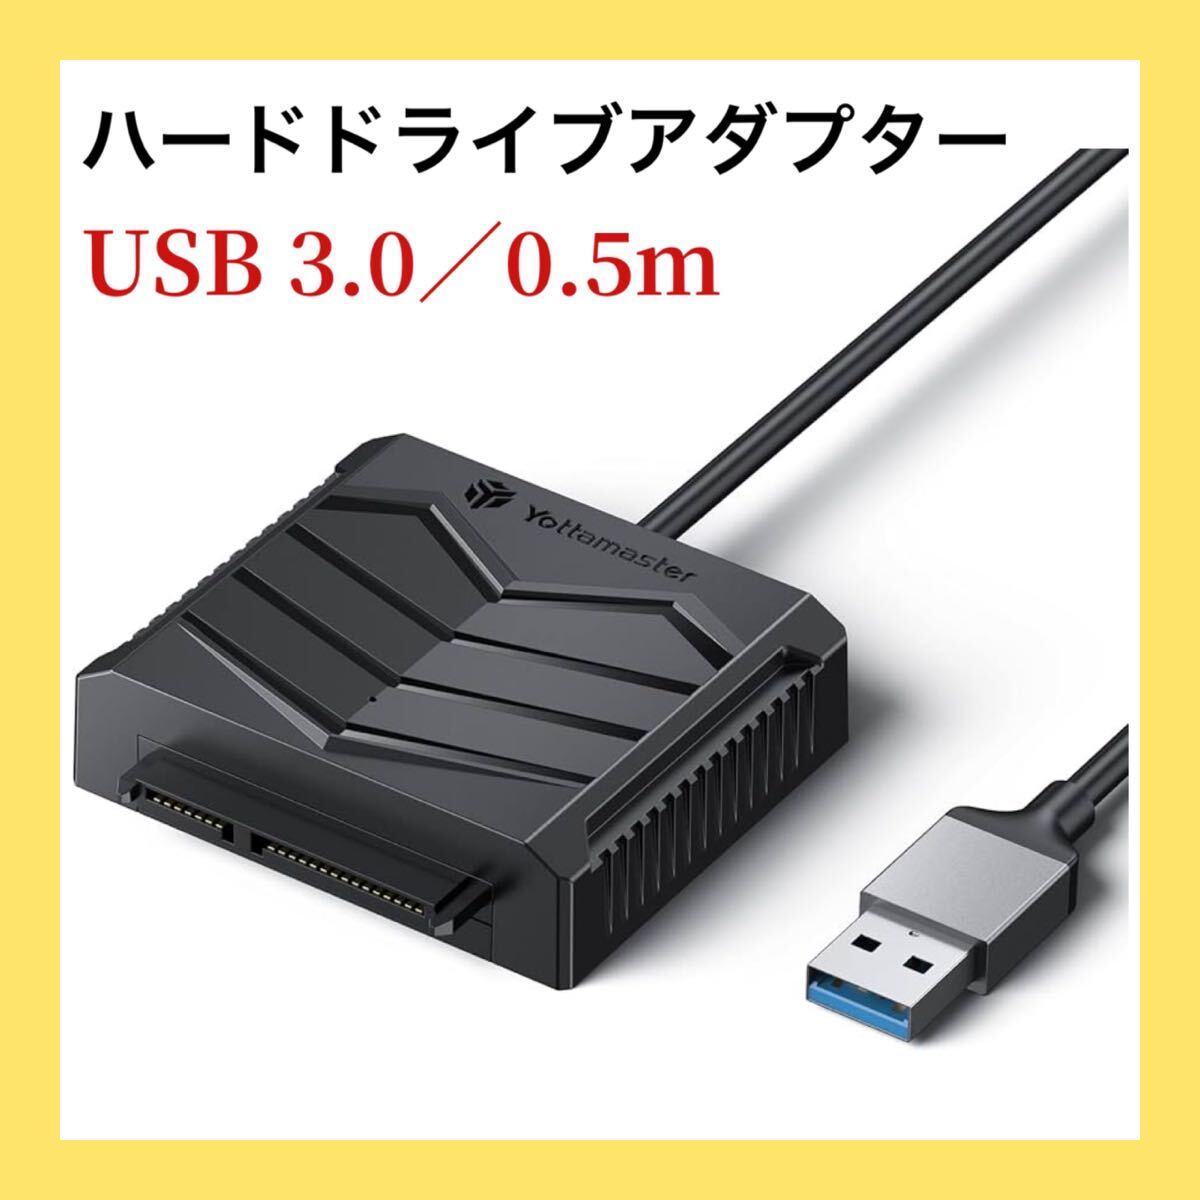 ー大特価ー Yottamaster SATA - USBケーブル USB3 0 - SATA III ハード